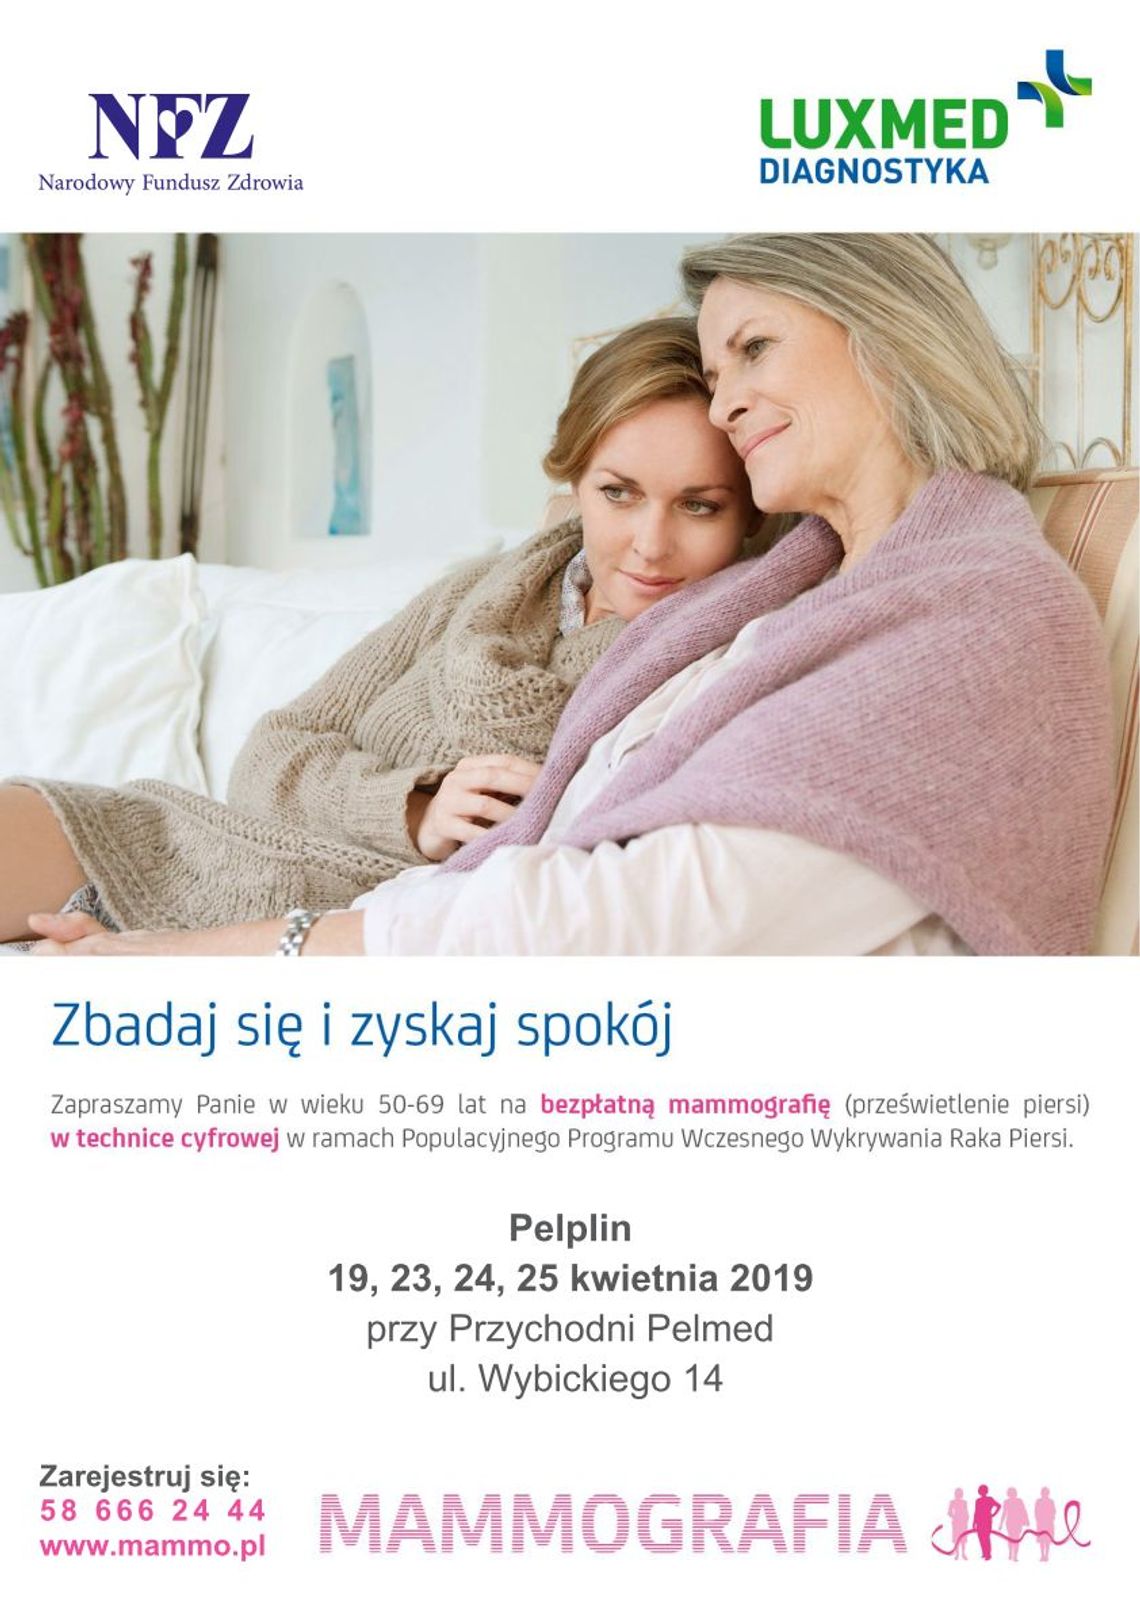 Bezpłatne badania mammograficzne na Kociewiu.